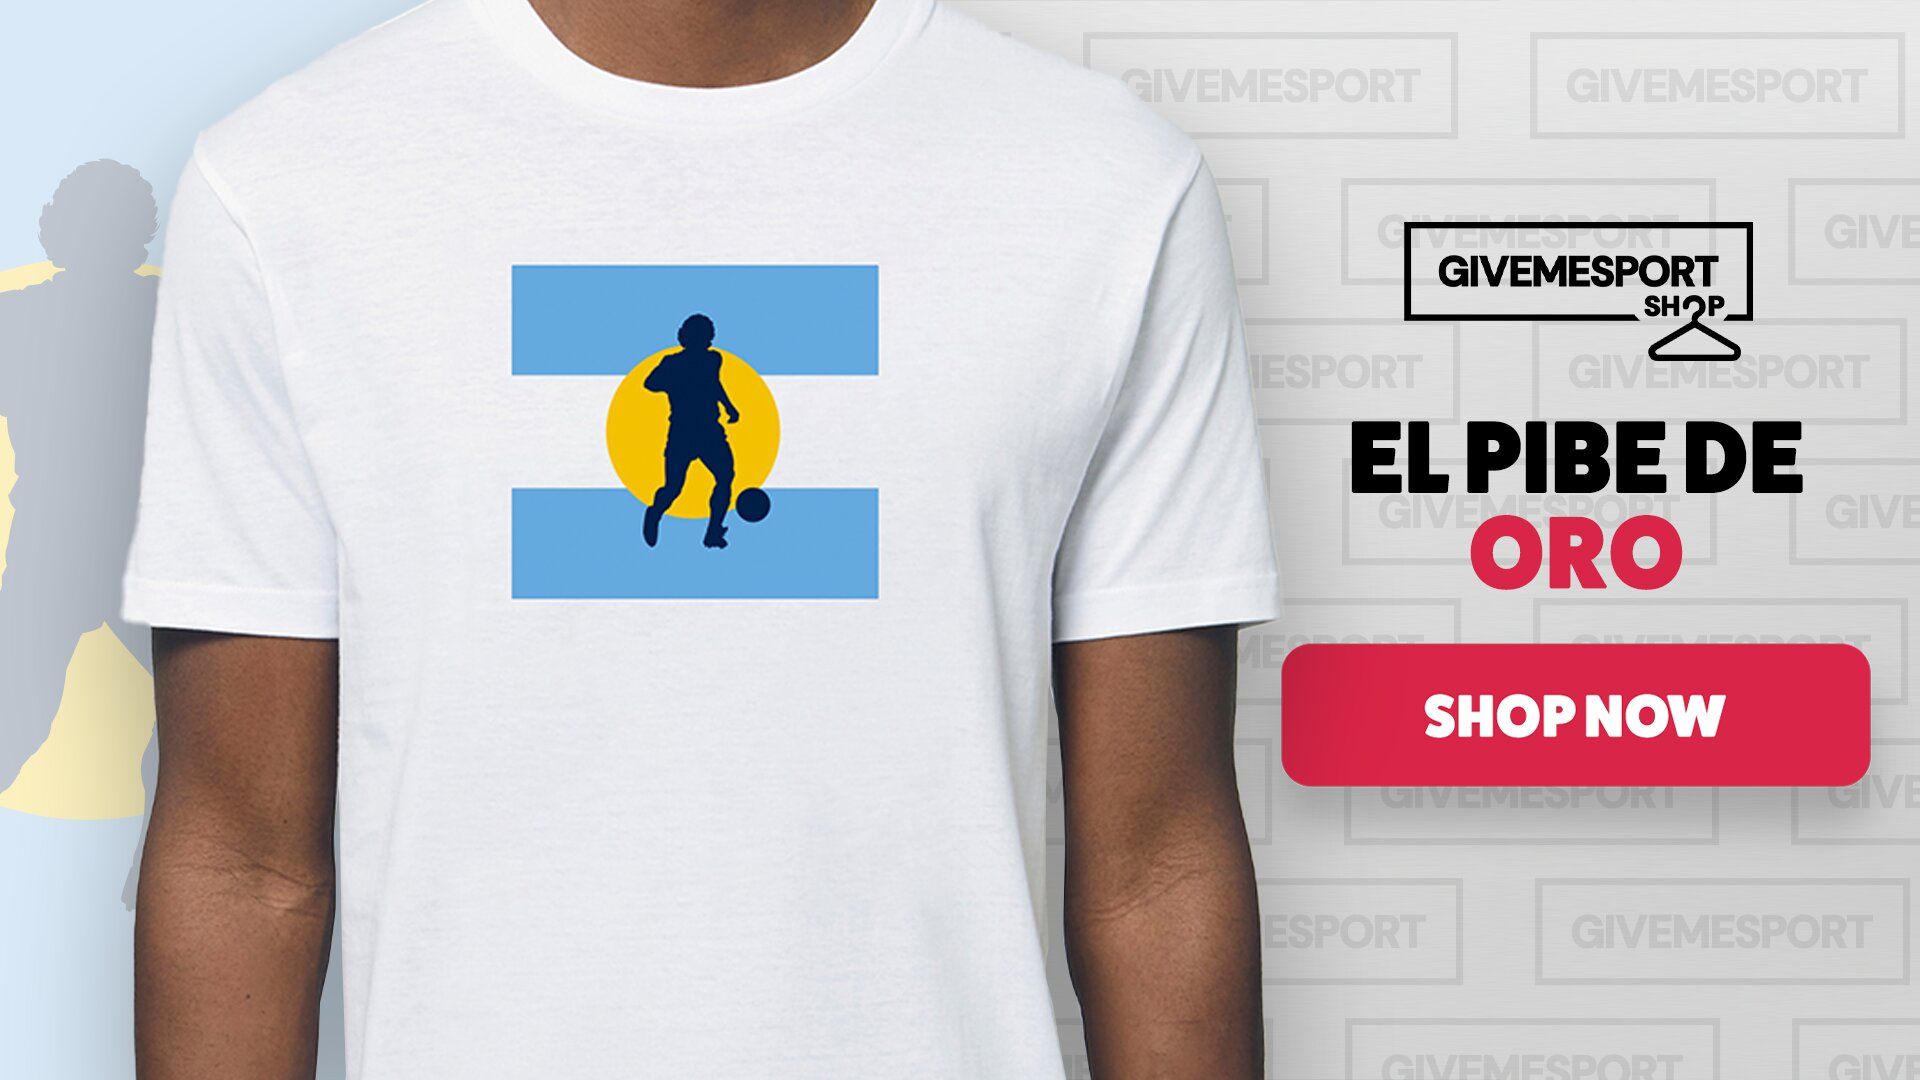 Buy your GMS Maradona t-shirt.